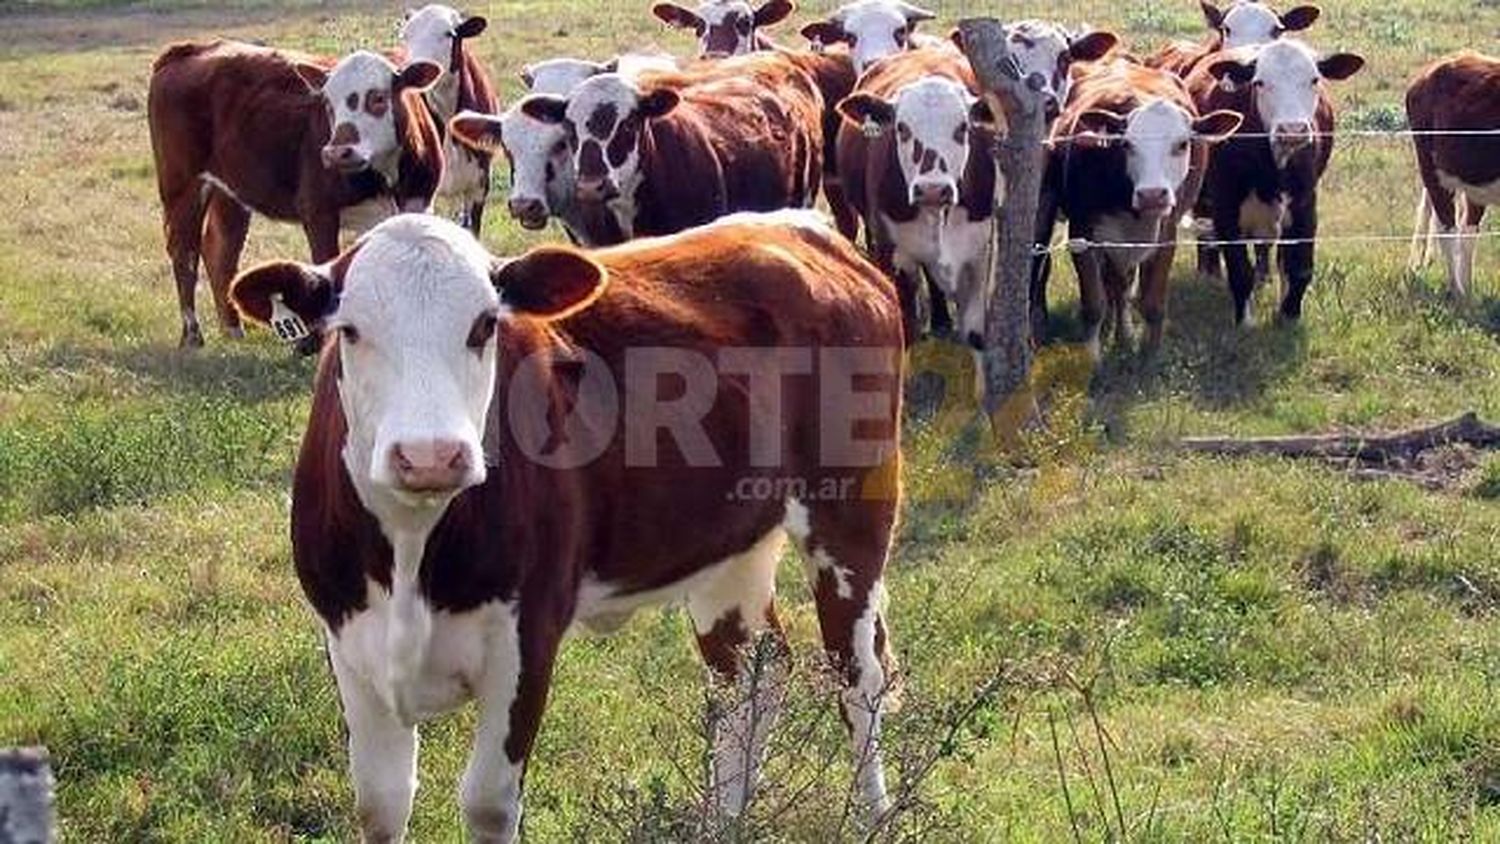 La ganadería regenerativa busca ganar terreno en Santa Fe